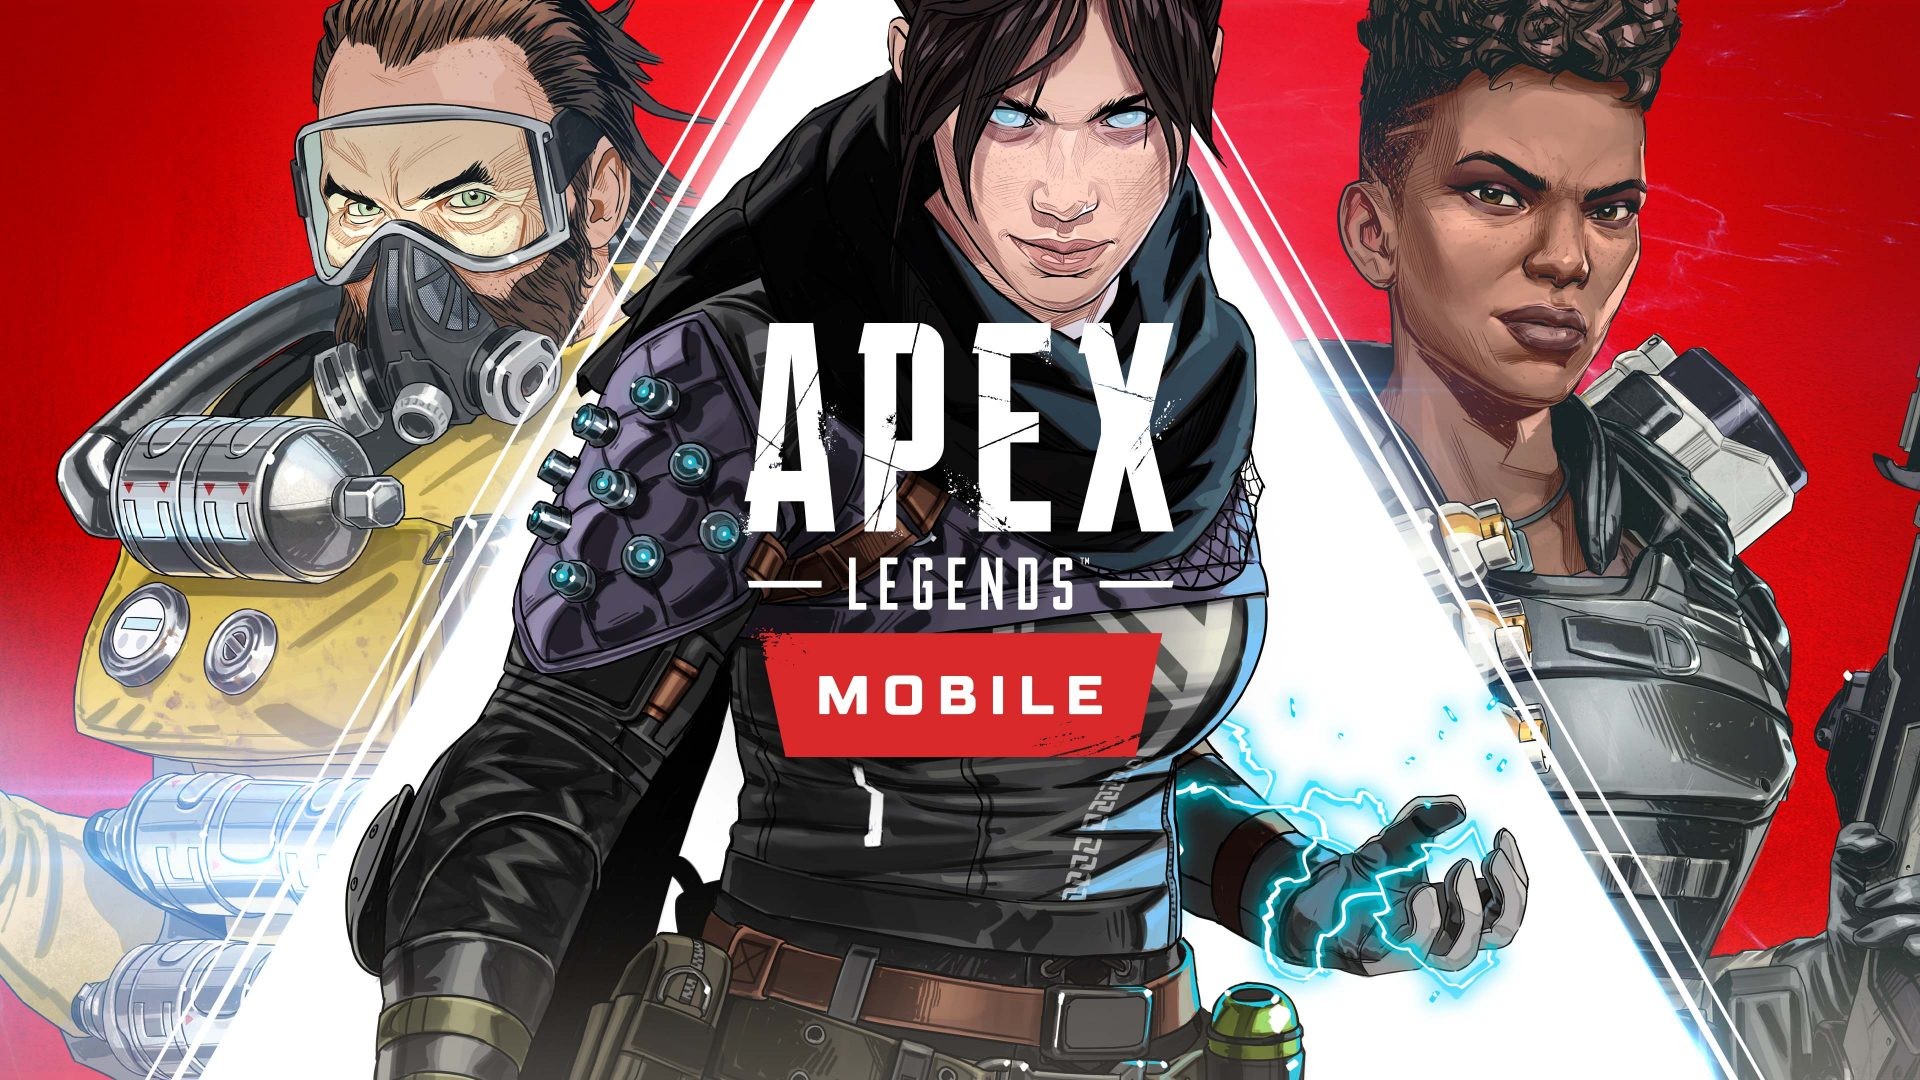 Mobilne Apex Legends debiutuje! Ale tylko w 10 krajach…